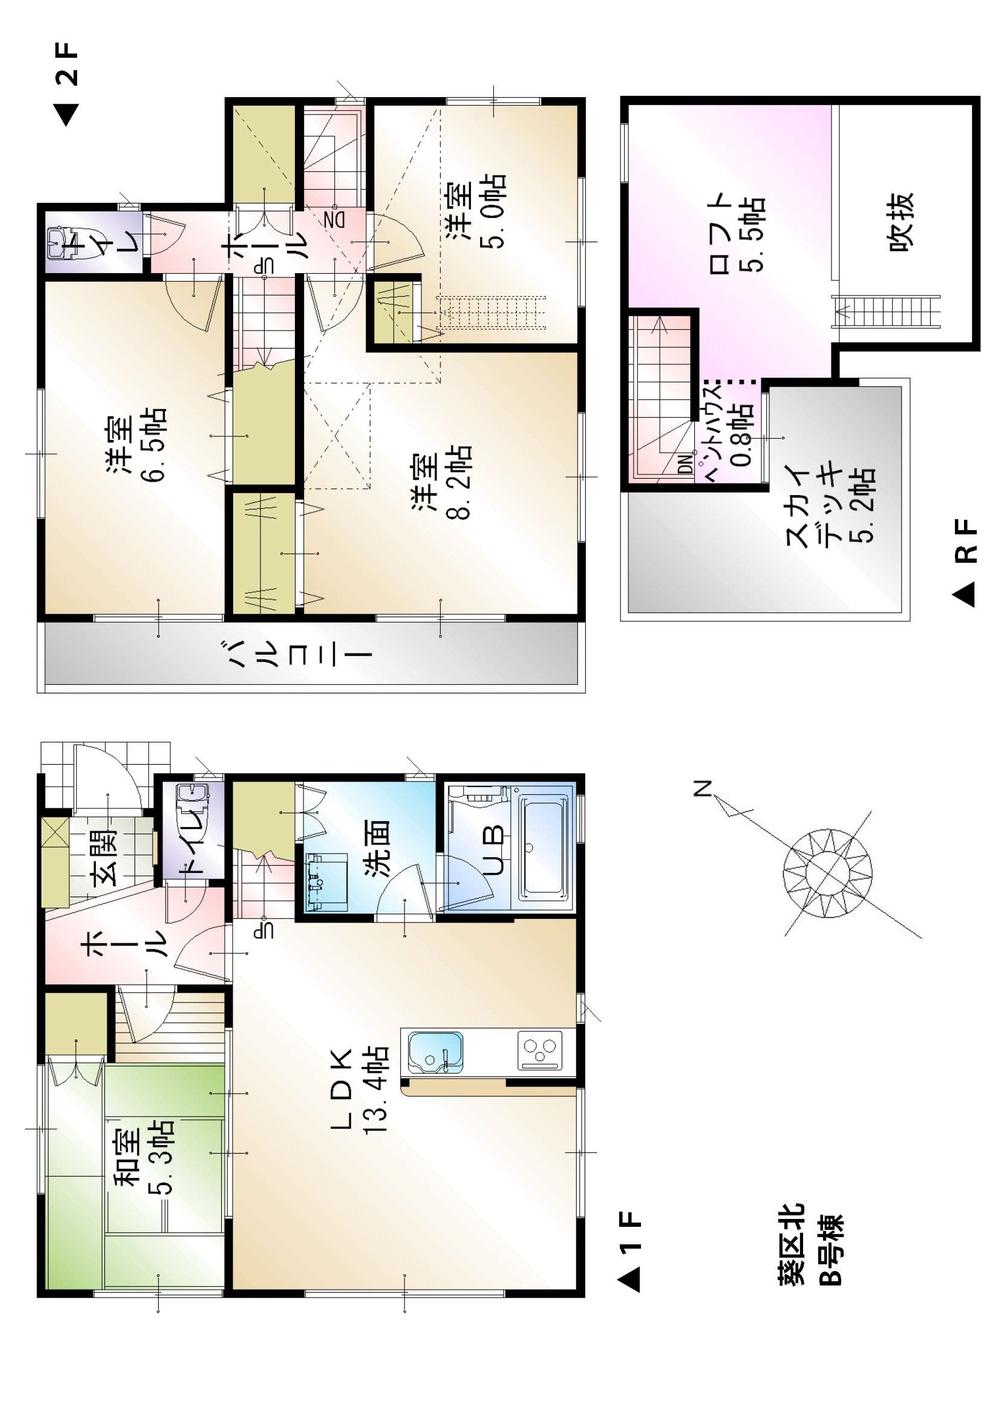 23.8 million yen, 4LDK, Land area 122.32 sq m , Building area 92.41 sq m B Building Floor plan